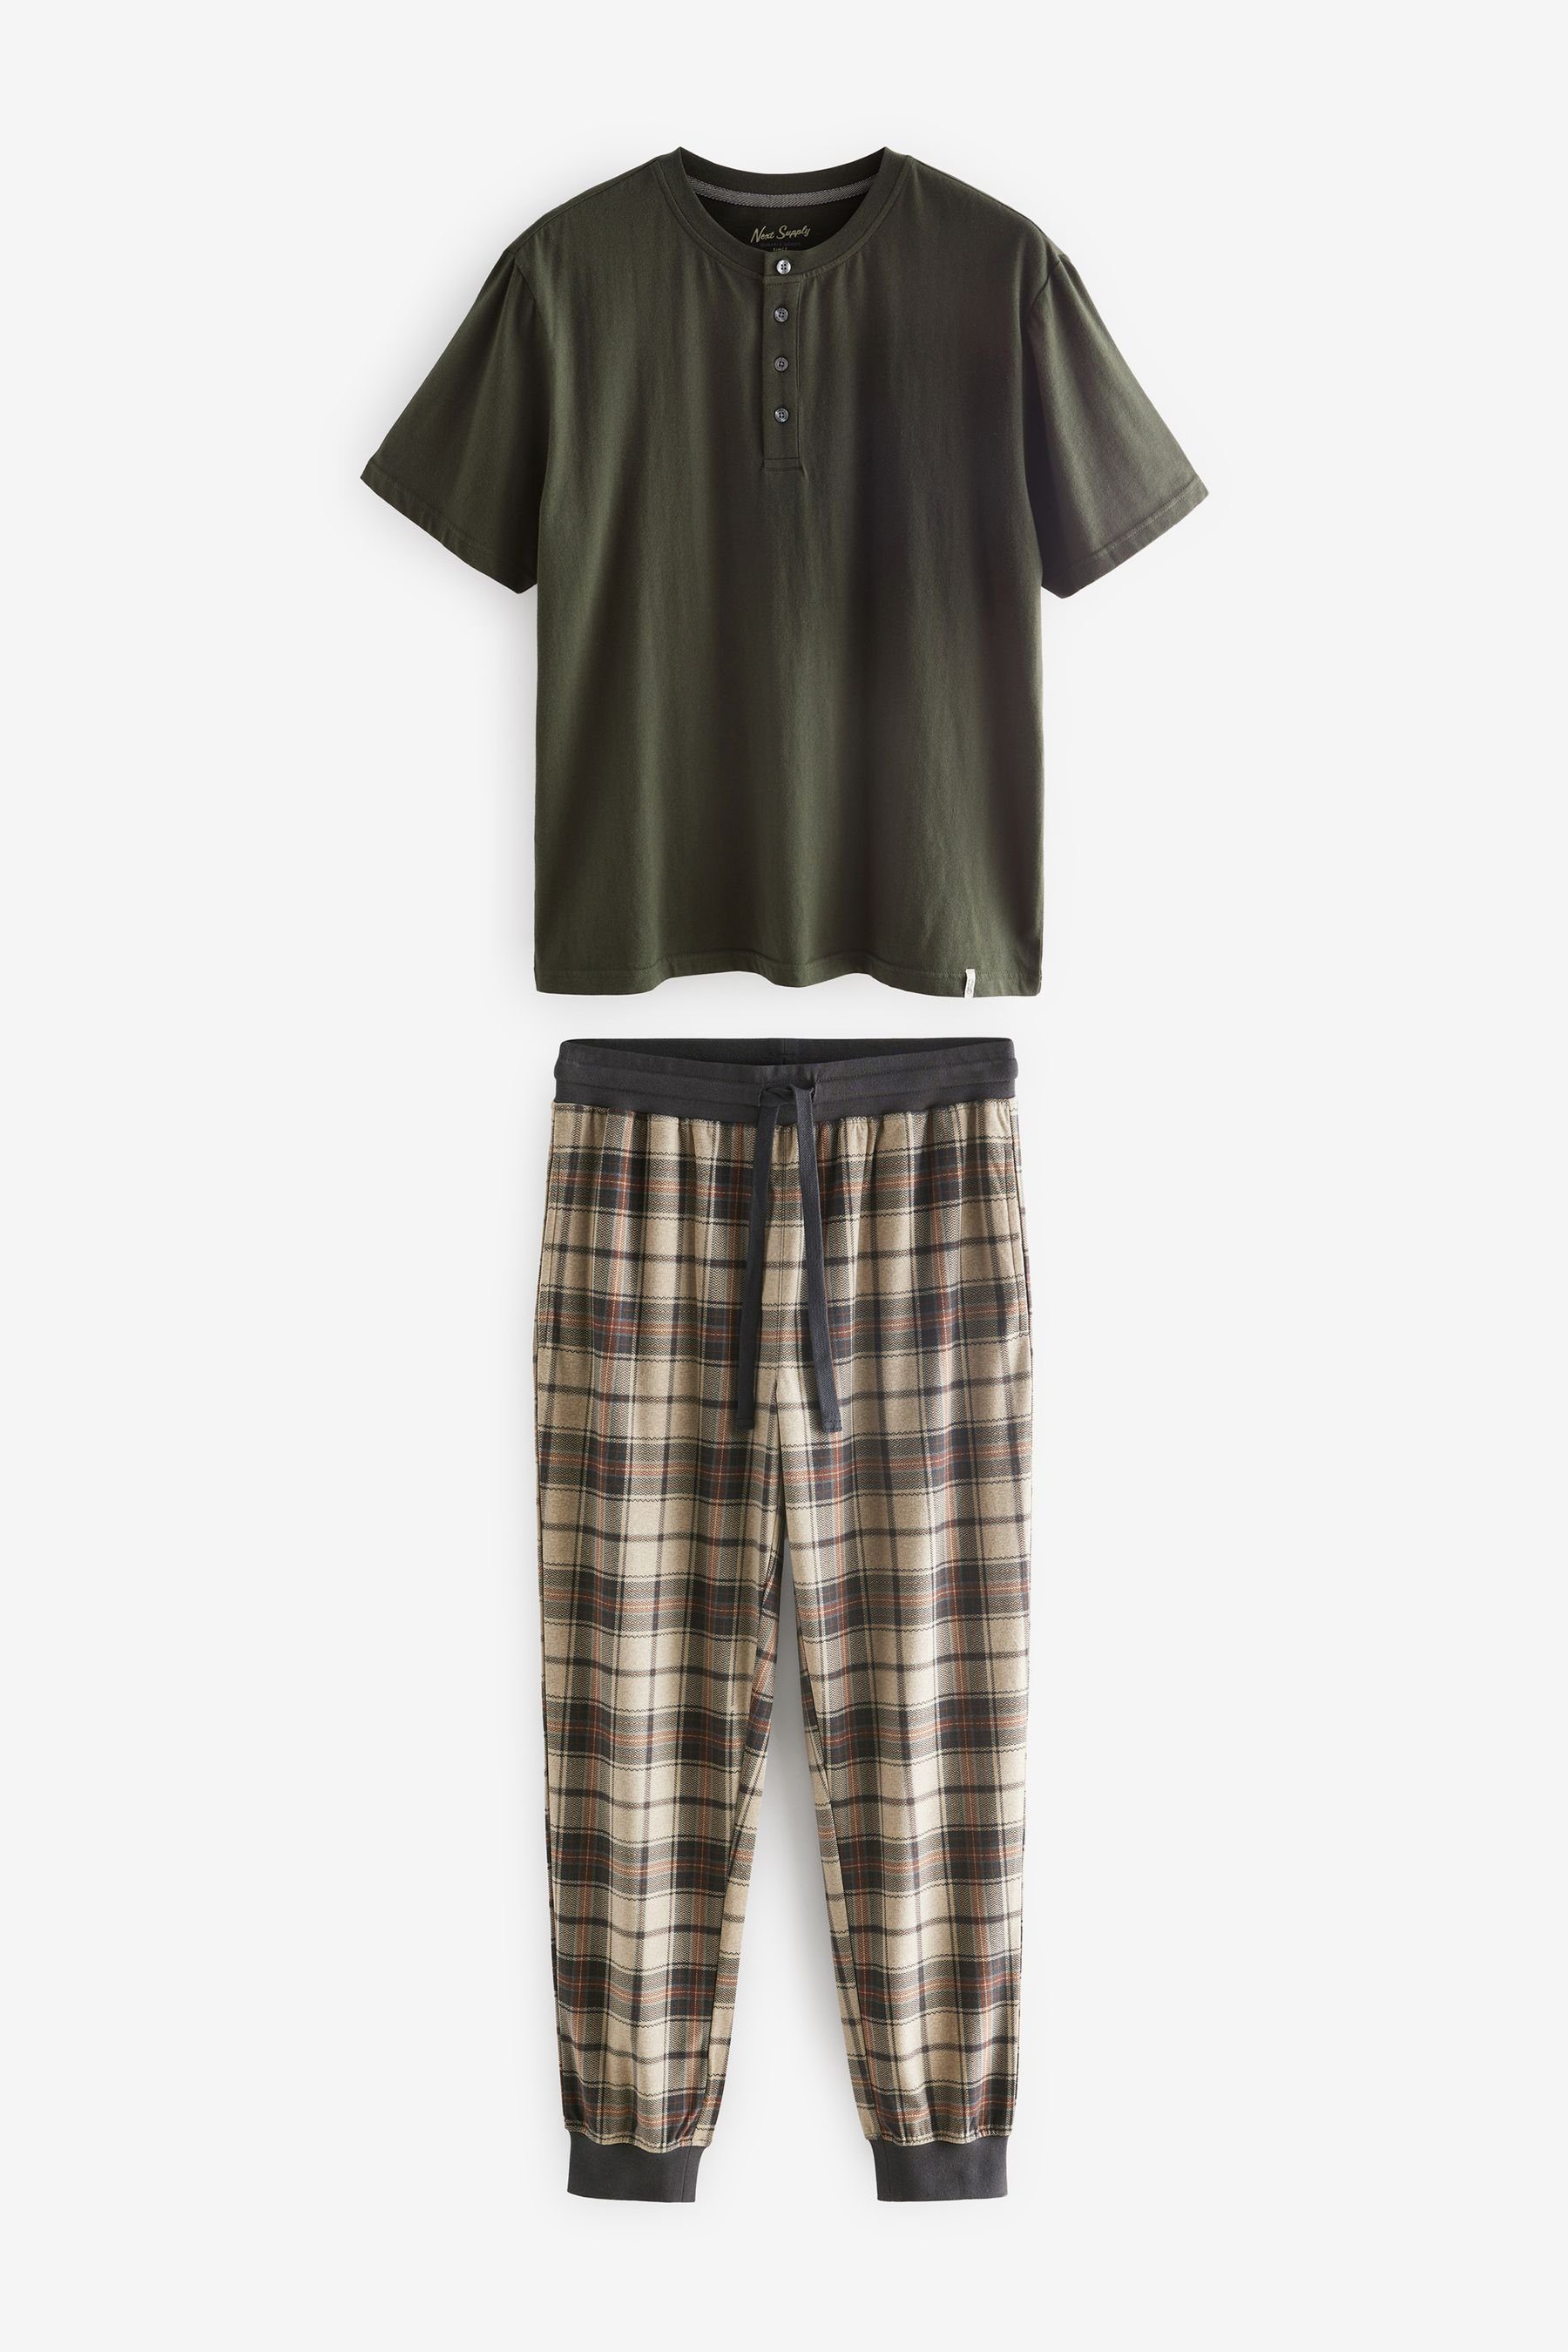 Next Pyjama MotionFlex Kuscheliger Check Bündchen Green/Neutral Khaki (2 mit Schlafanzug tlg)